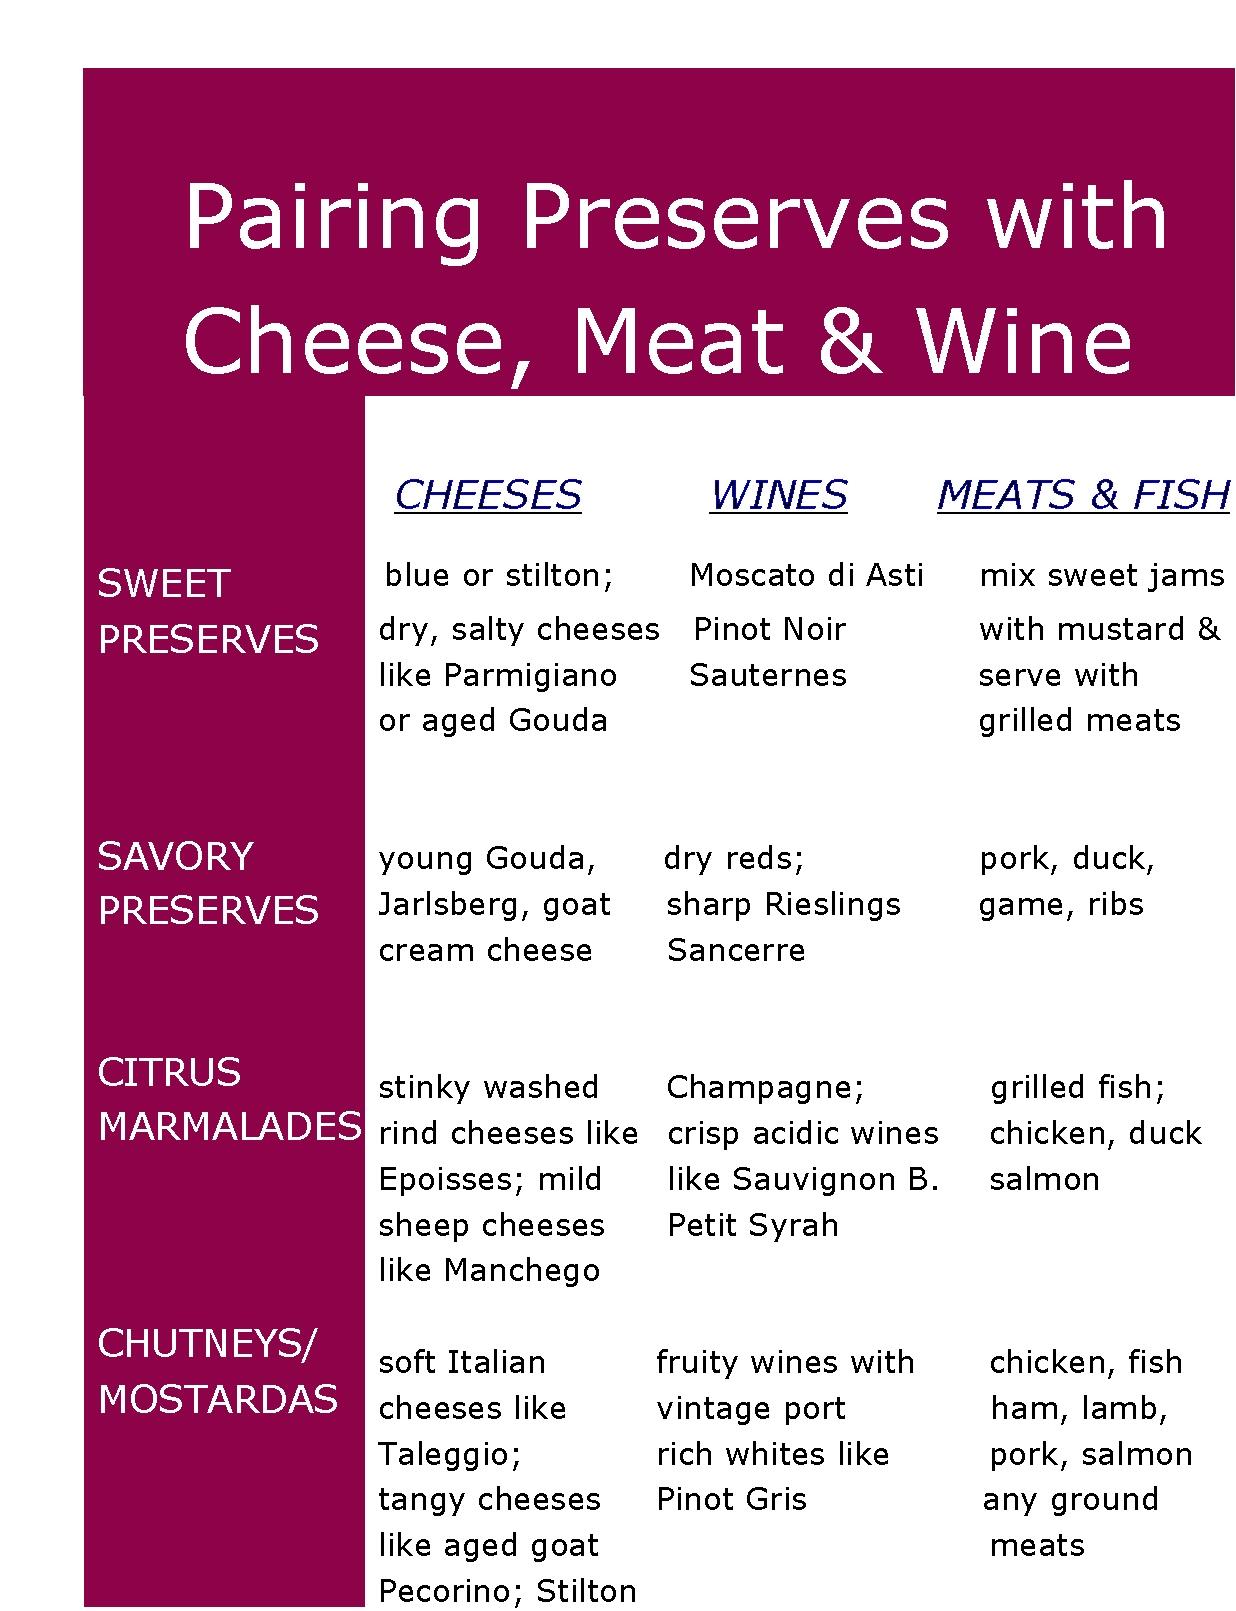 Cheese, meat & wine pairings